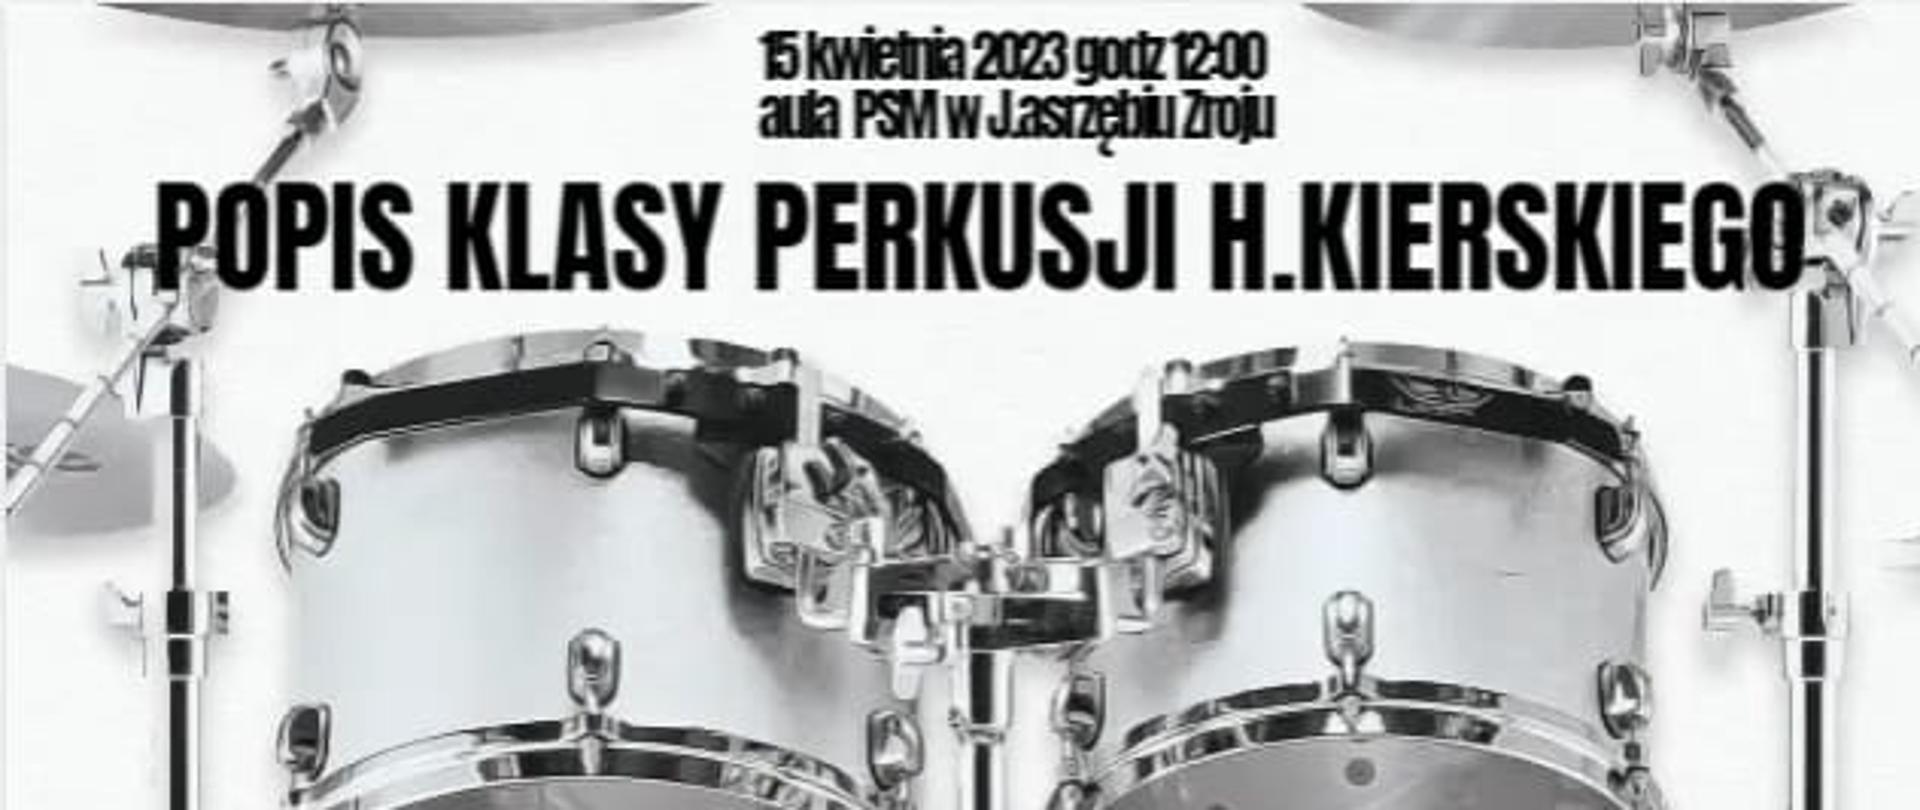 15 kwietnia 2023 r. aula PSM w Jastrzębiu-Zdroju, popis klasy perkusji H. Kierskiego, w czarno-białym tle zestaw perkusyjny z umieszczonym na membranie jednego z bębnów logo szkoły.